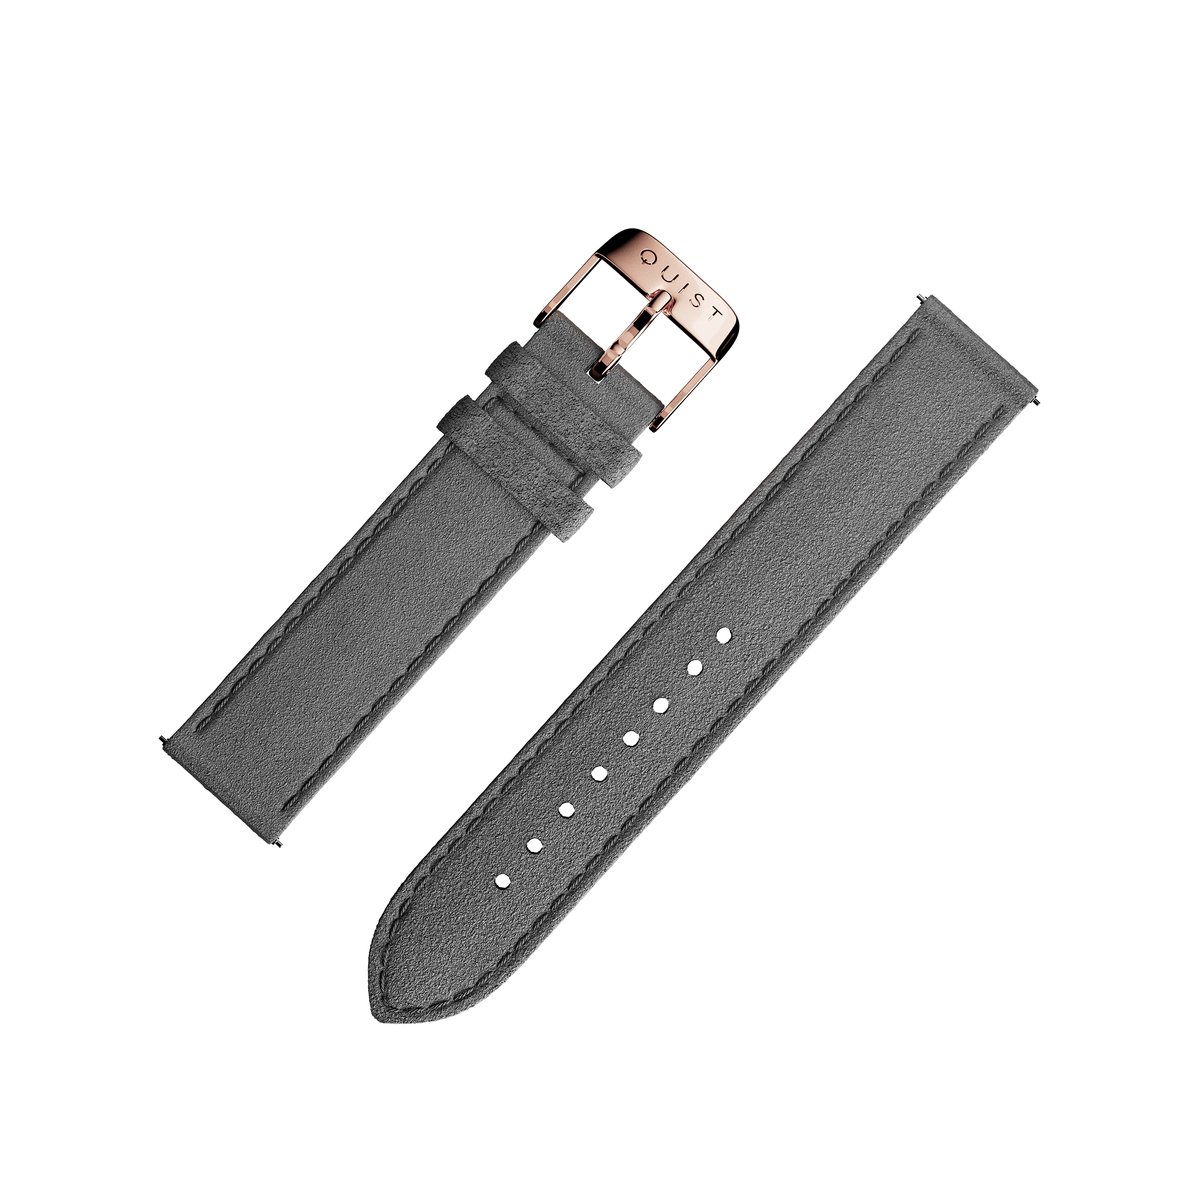 QUIST - horlogebandje - donkergrijs suede - rosegouden sluiting - 18mm